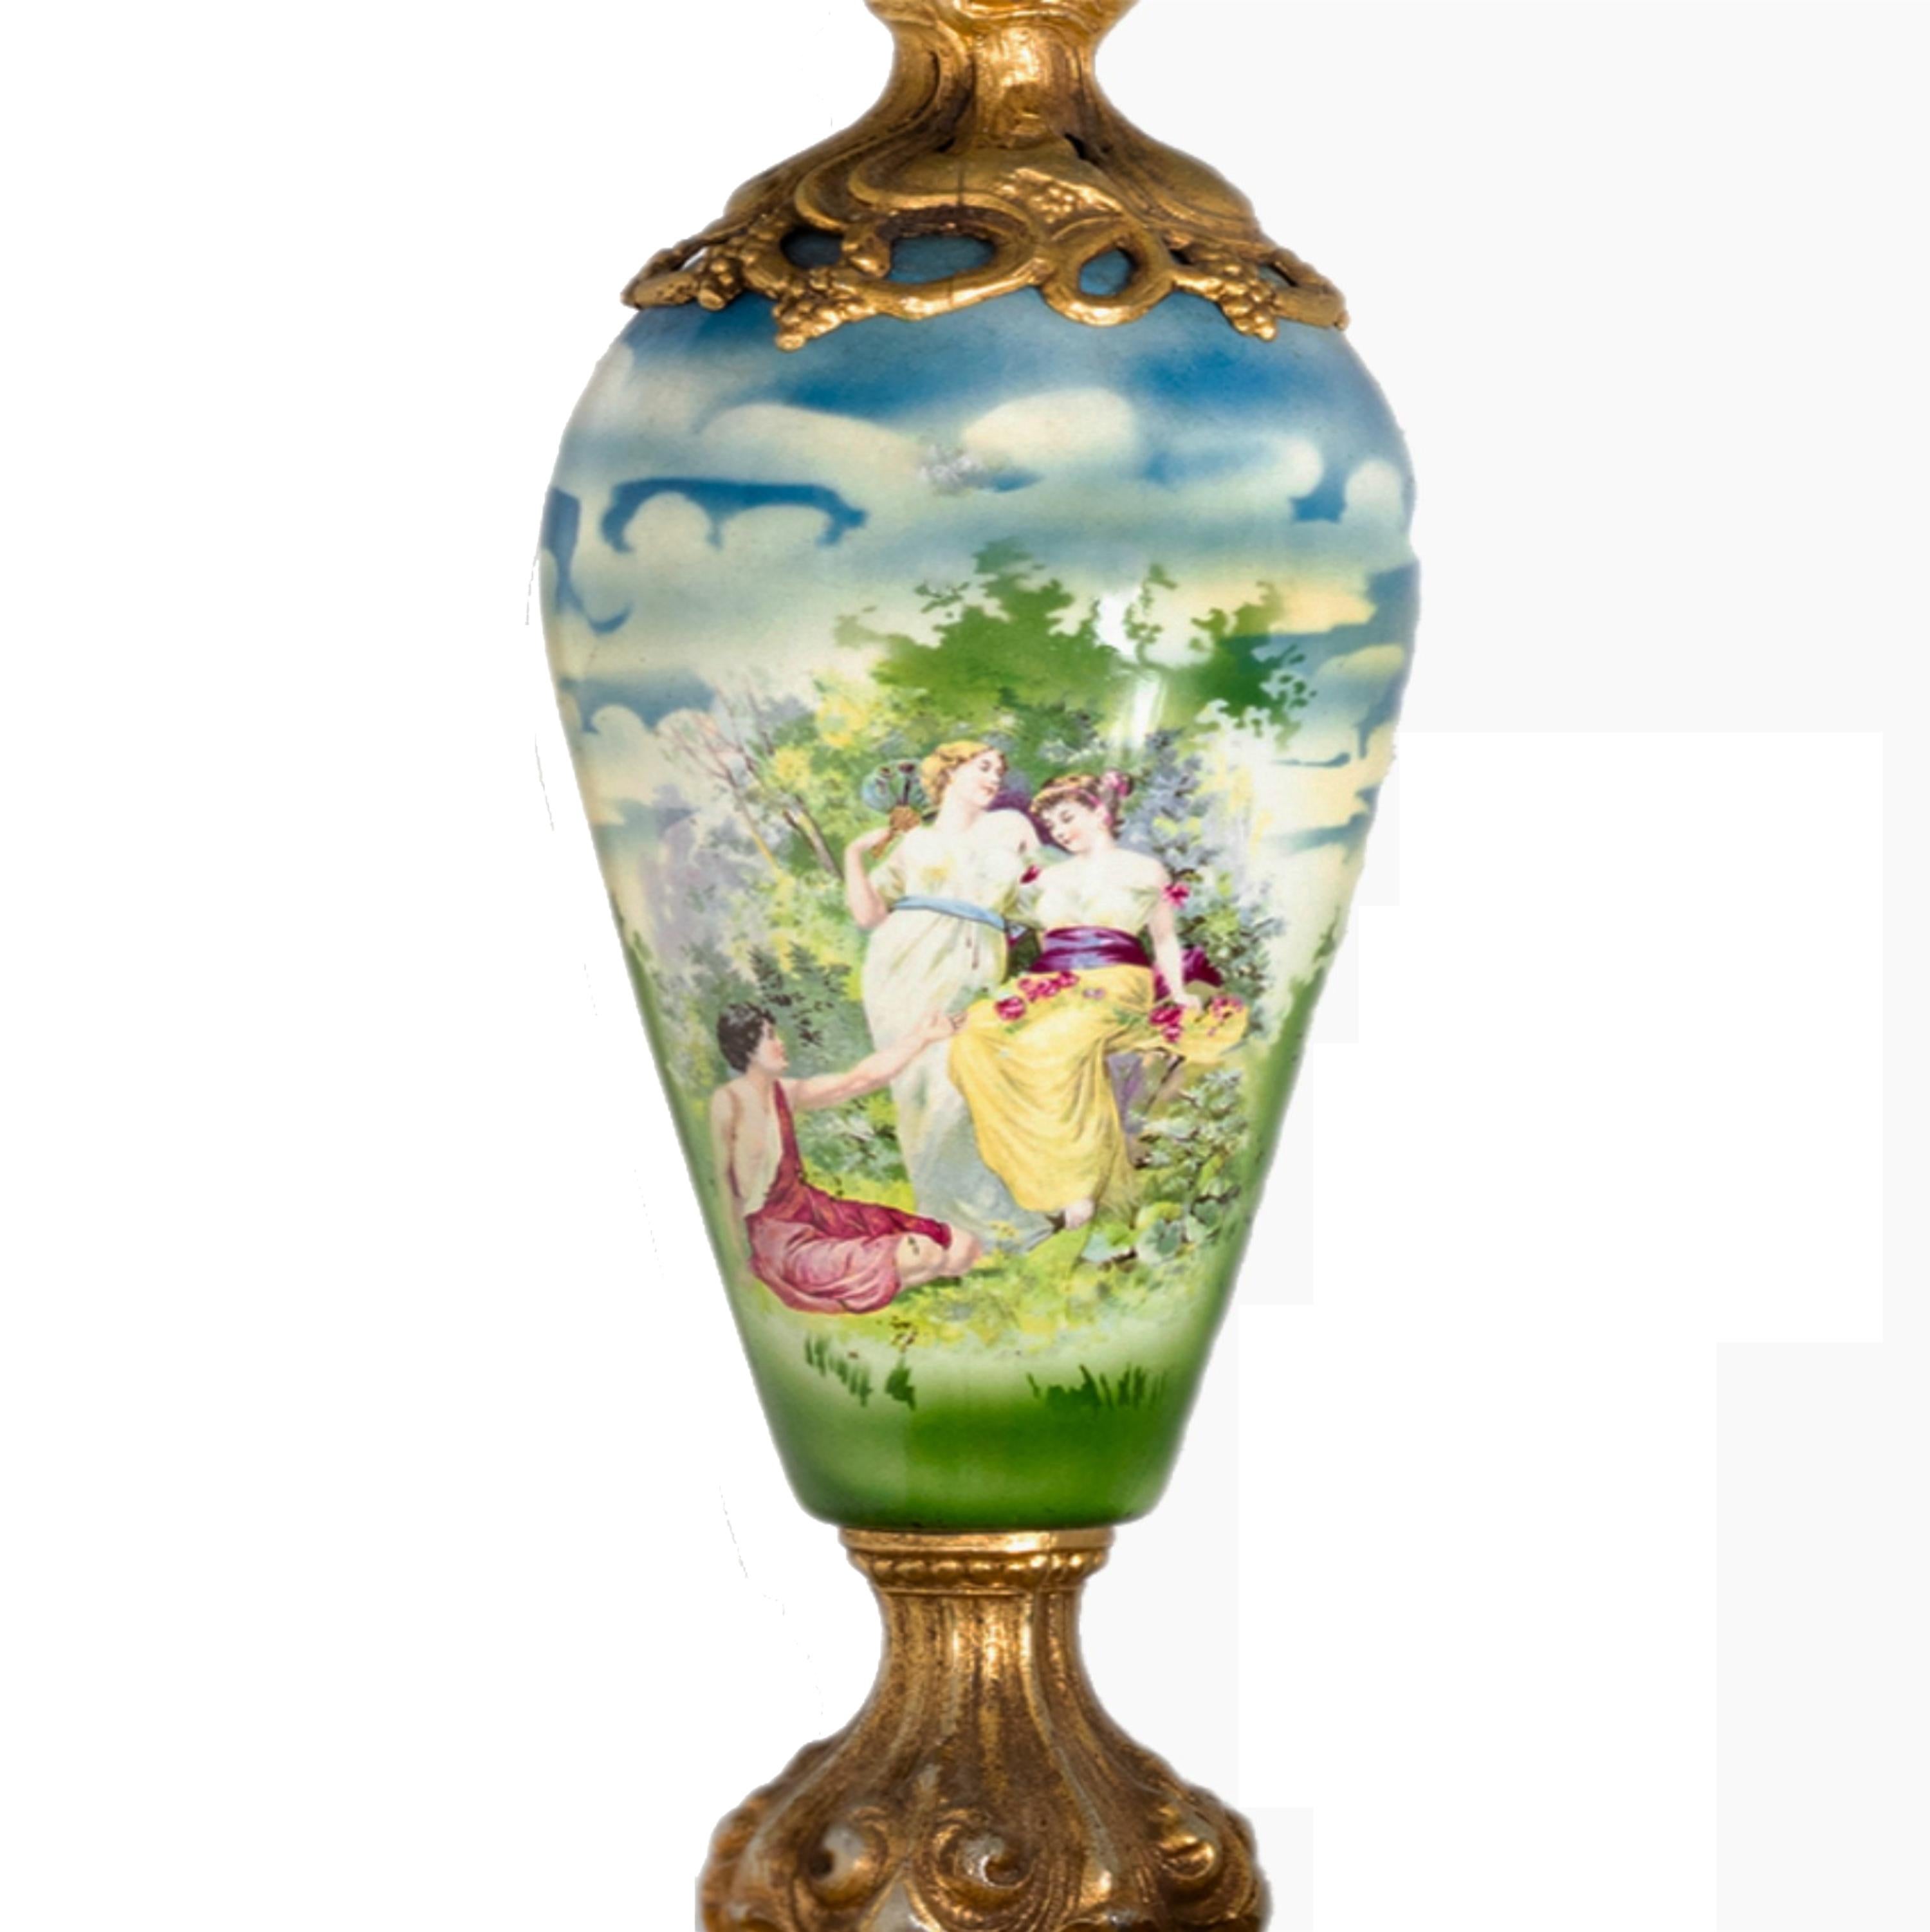 Eine Tischlampe im Stil von Napoleon III. Sèvres mit bemaltem Porzellan mit galanten Nymphen im Garten, vergoldeter Bronze und Briefkopf im Stil des Barock-Revivalismus der 1900er Jahre

Höhe mit Lampenschirm: 68 cm
Höhe ohne Lampenschirm: 48 cm